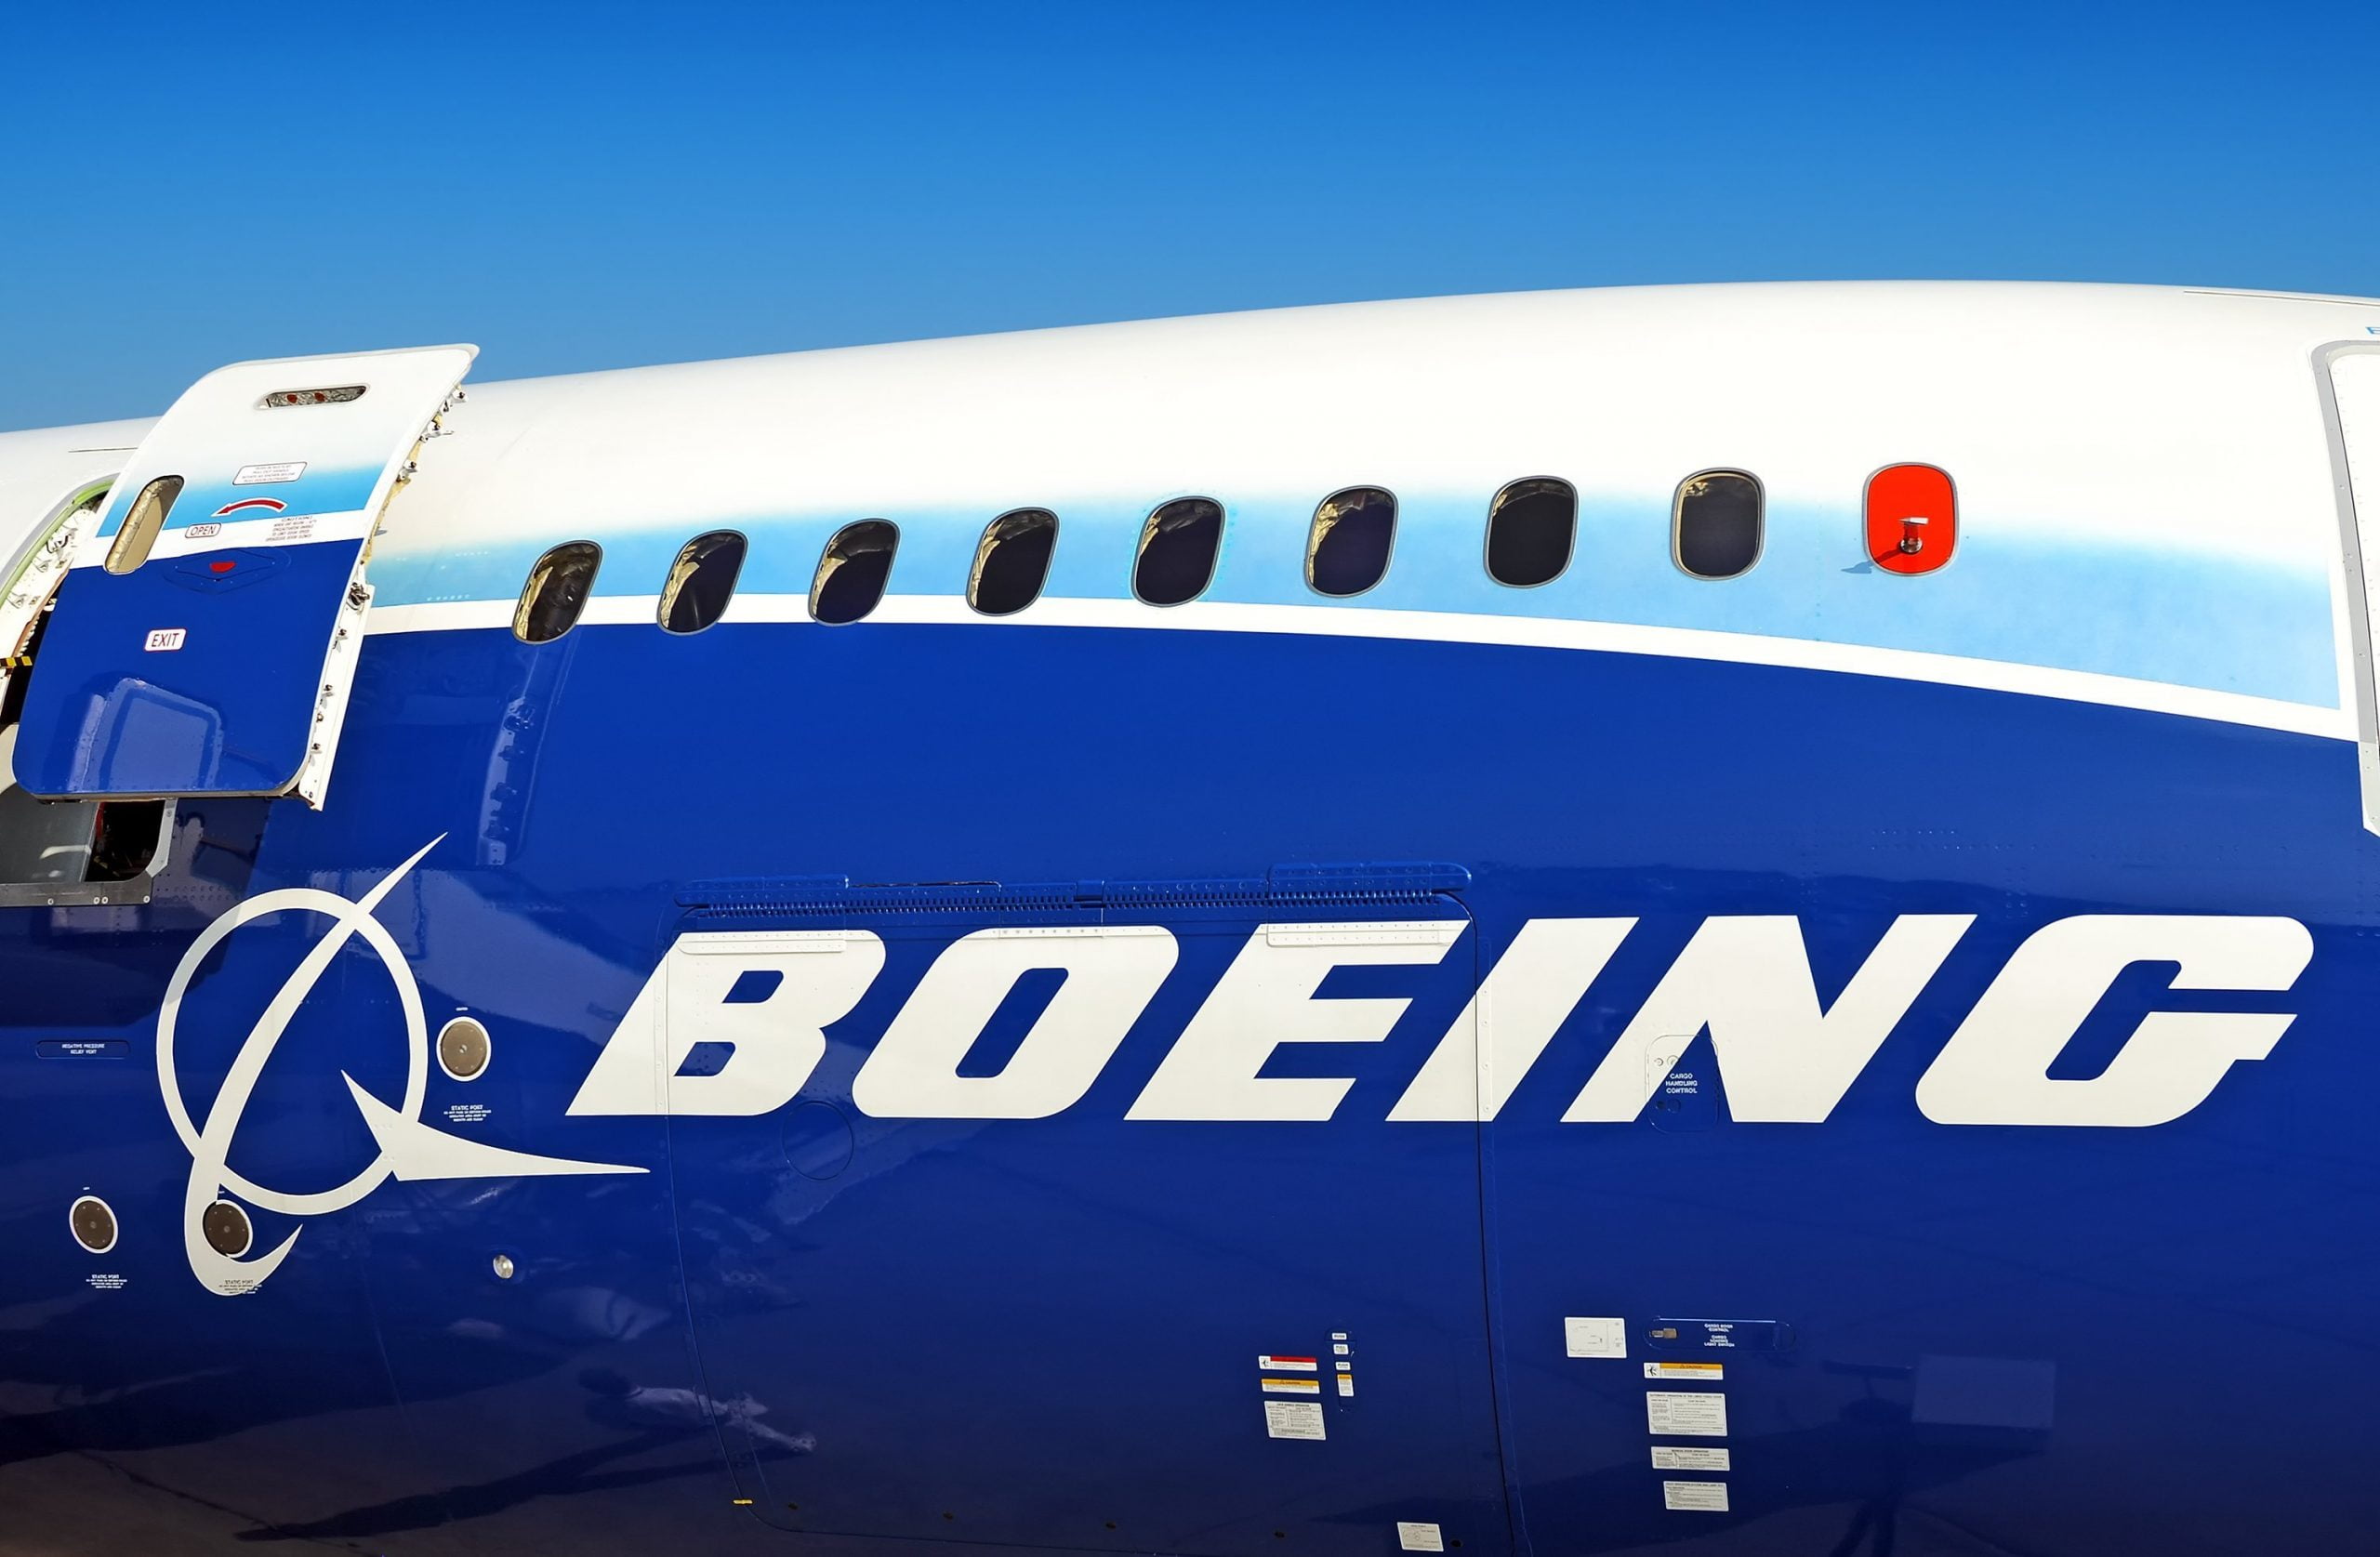 Koronakríza spôsobila hromadné prepúšťanie v Boeingu